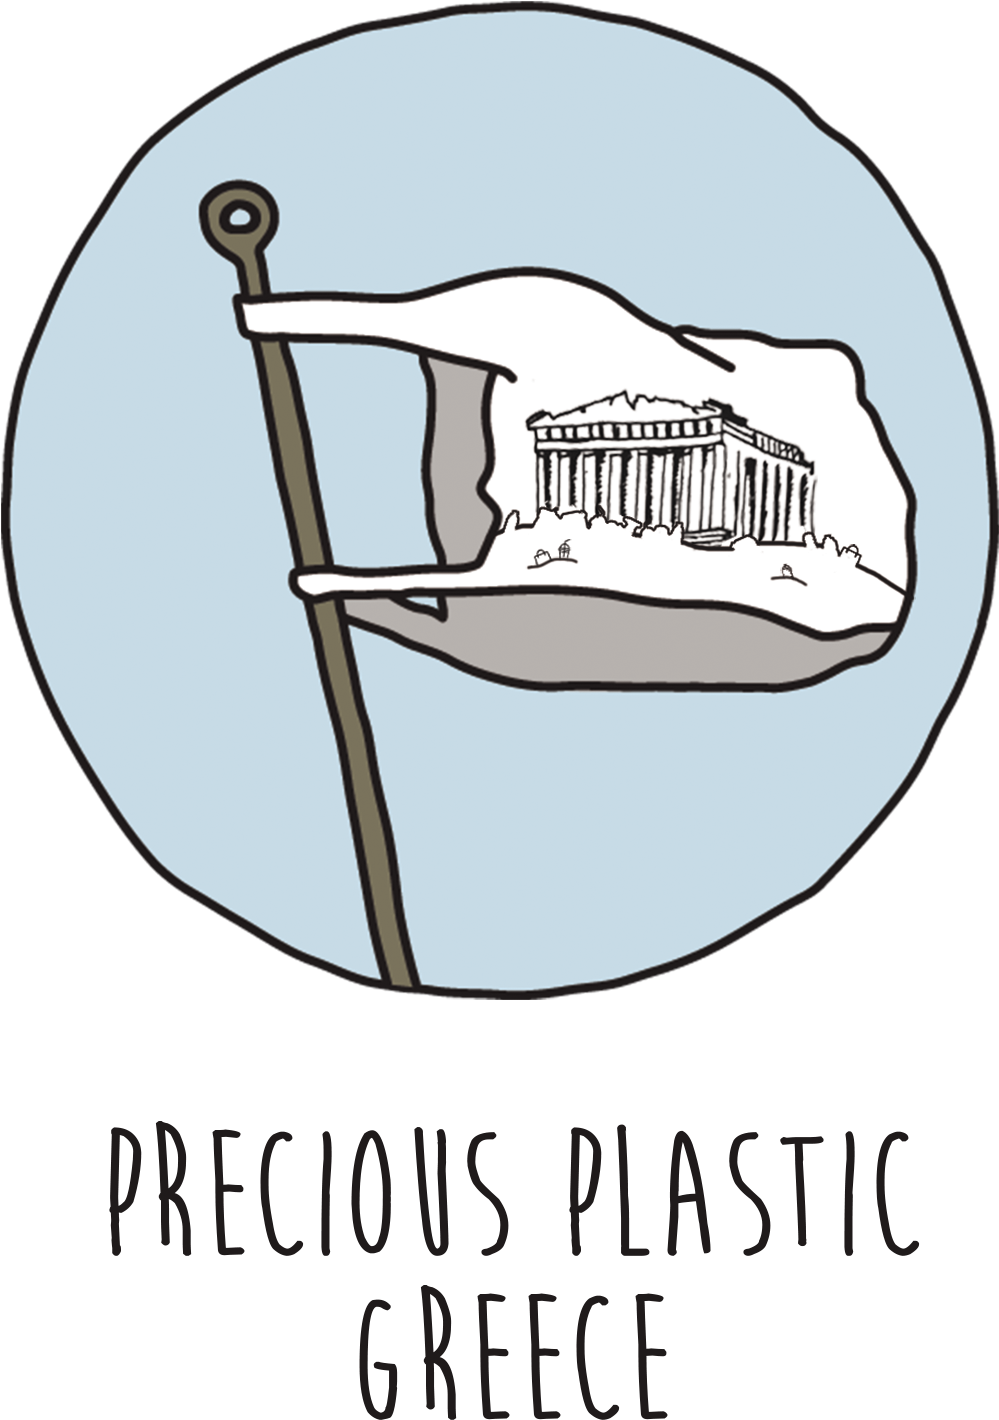 Precious Plastic Logo Greek Transparent Background - Plastic Drawing Transparent Background Clipart (1181x1575), Png Download